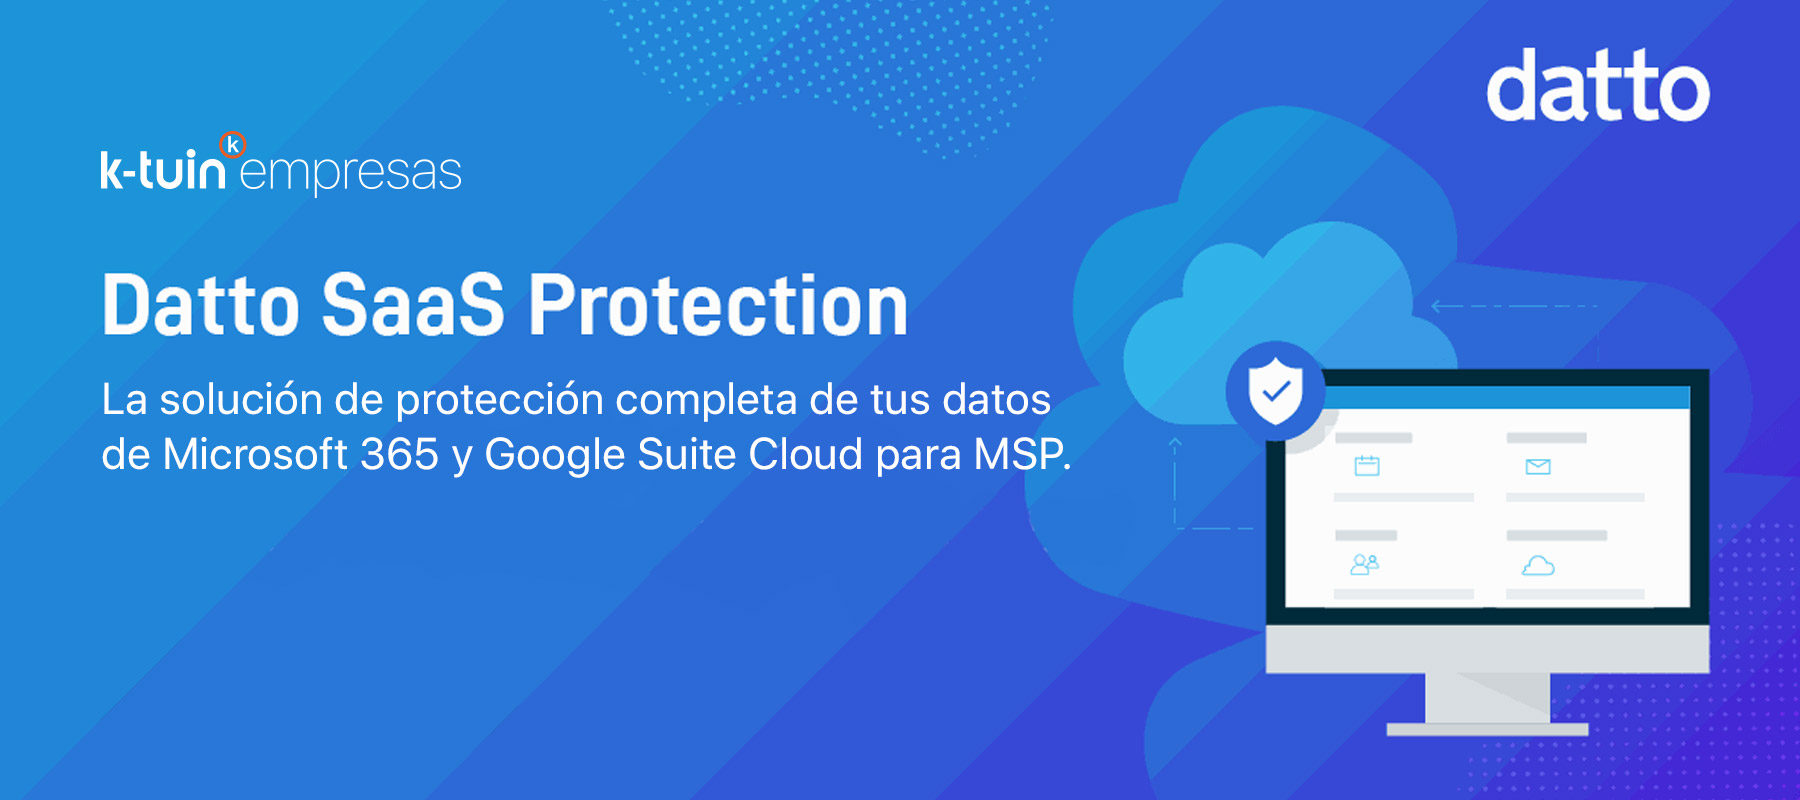 Datto Saas Protection: Copia de seguridad en la nube para empresas